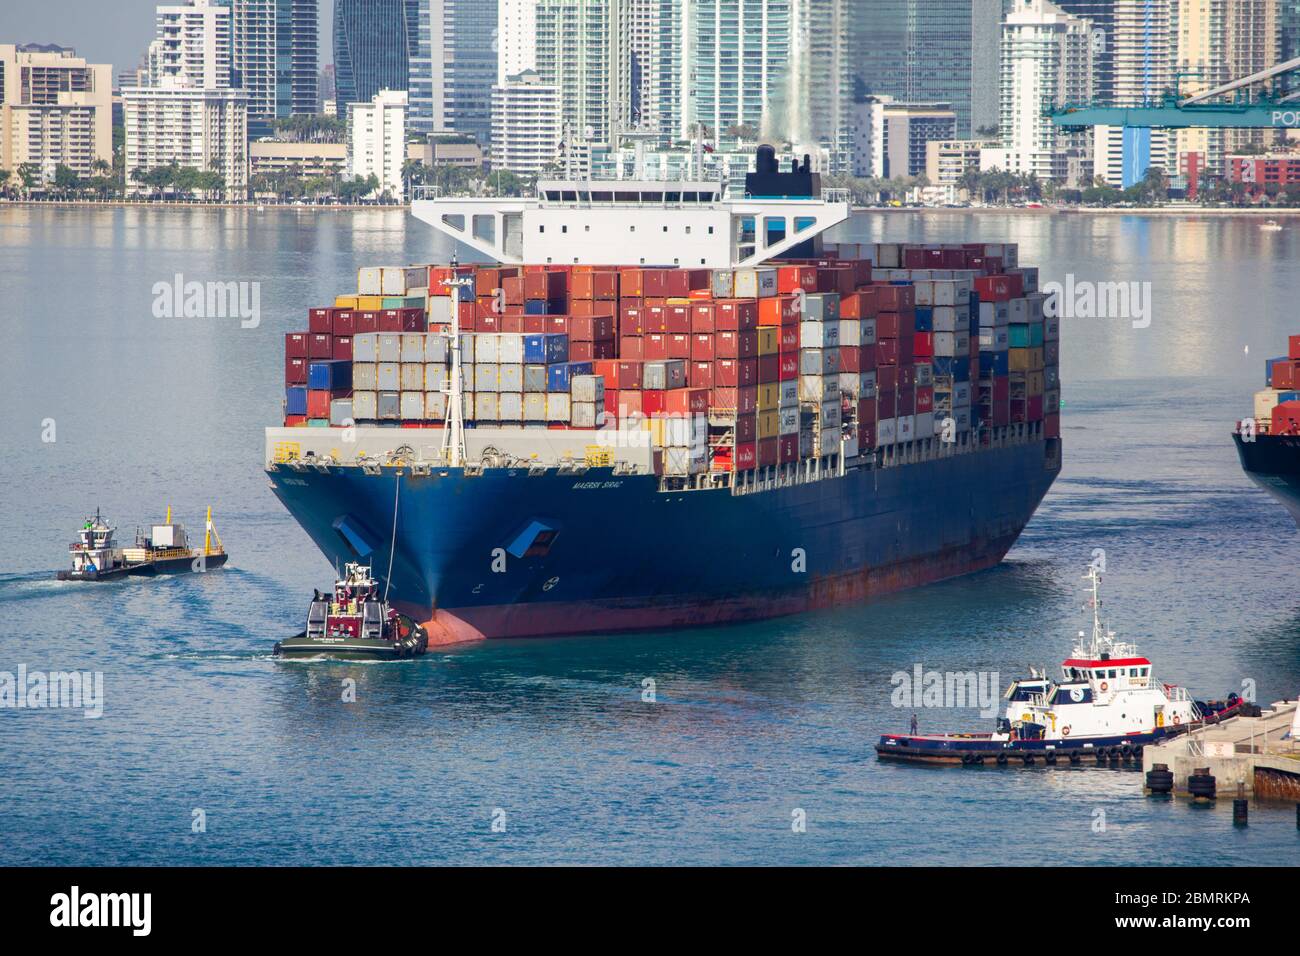 Miami Beach, Florida, Containerschiffe teilweise voll verlassen Hafen vorbei an Fischer Insel durch Regierung Schnitt nahe Südstrand vom Hafen von miami Stockfoto